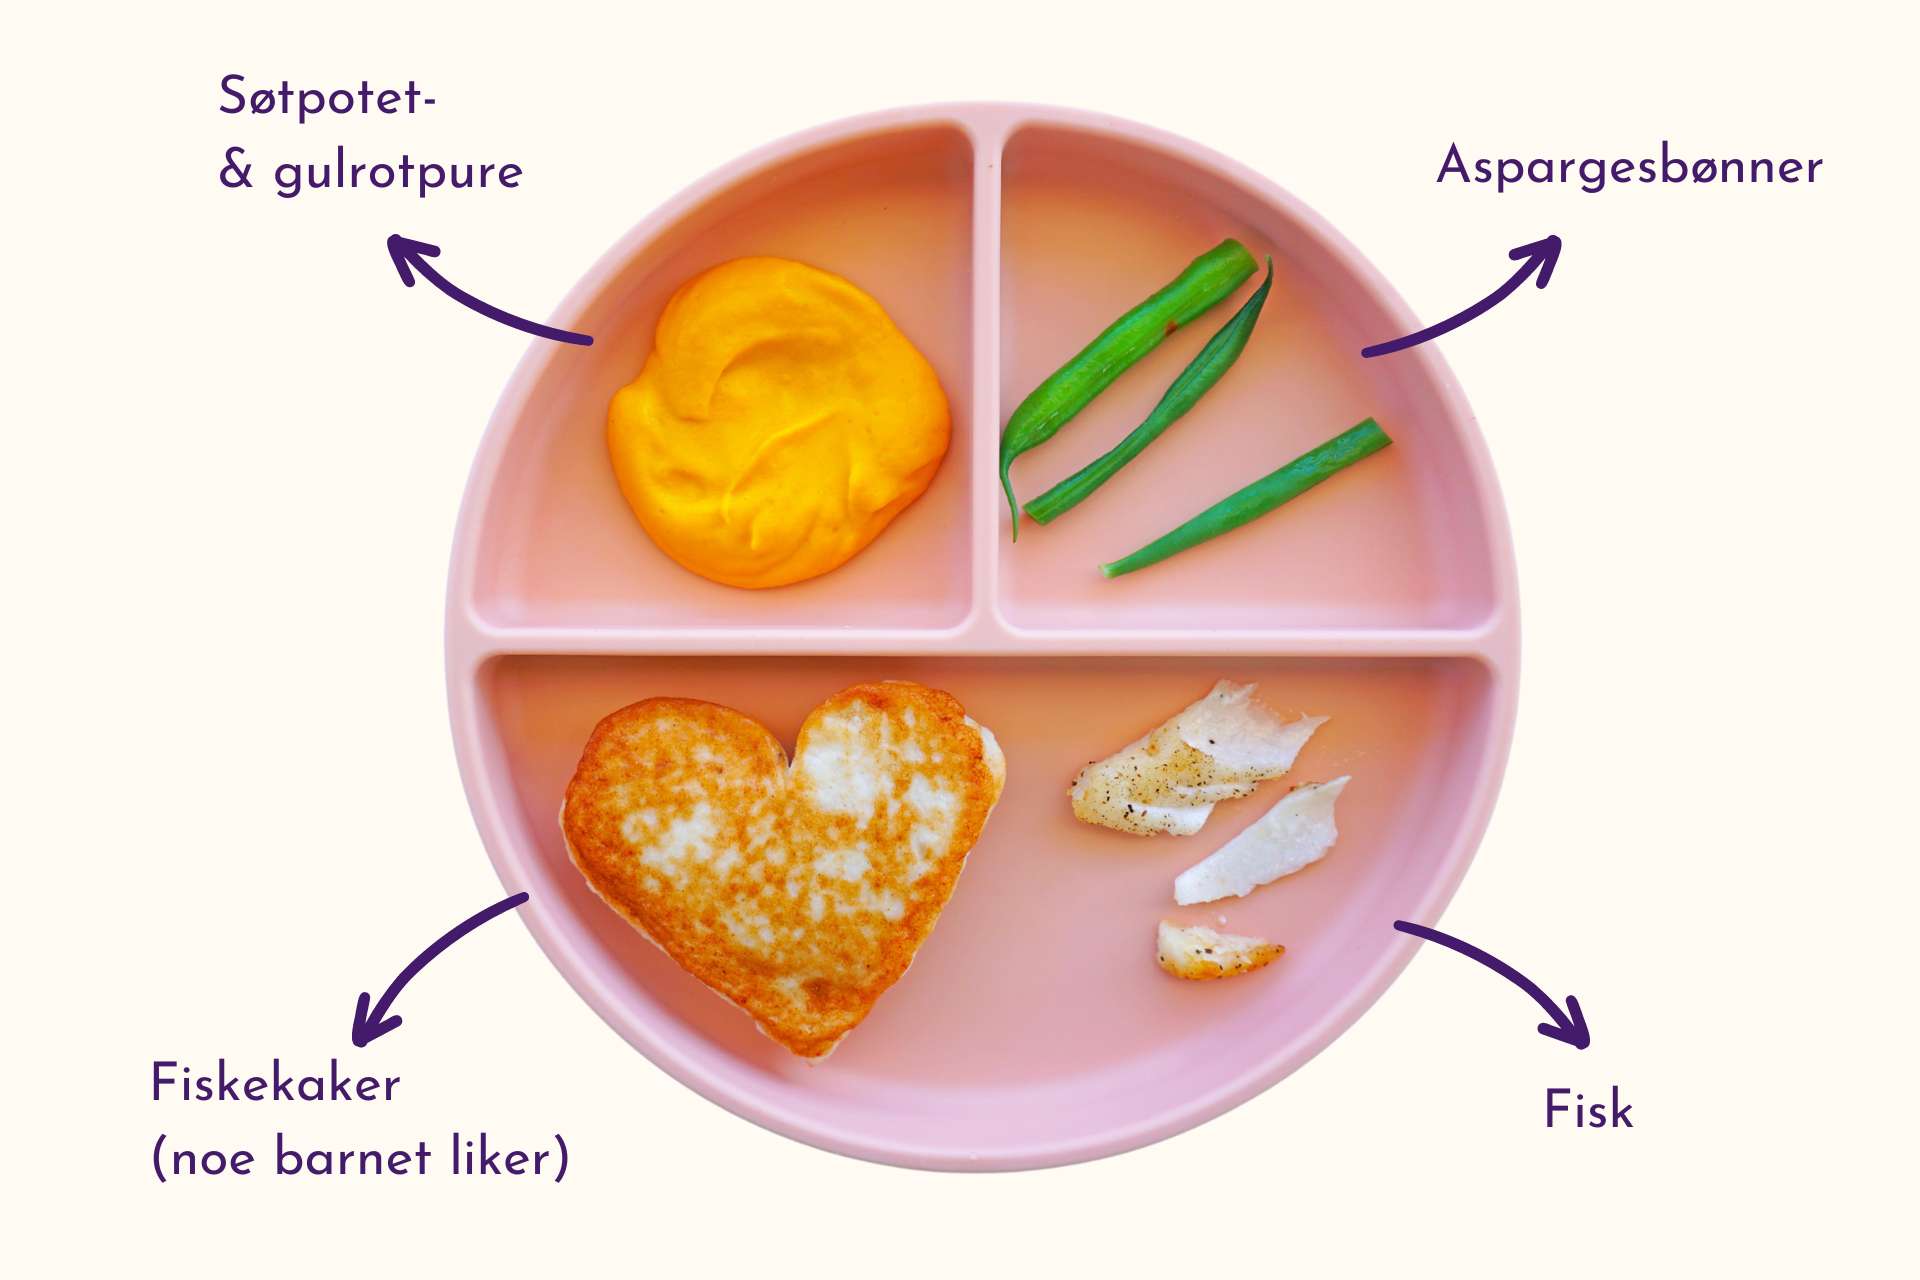 Barnevennlig Fisk, crispy spekeskinke, aspargesbønner og søtpotet- & gulrotpure